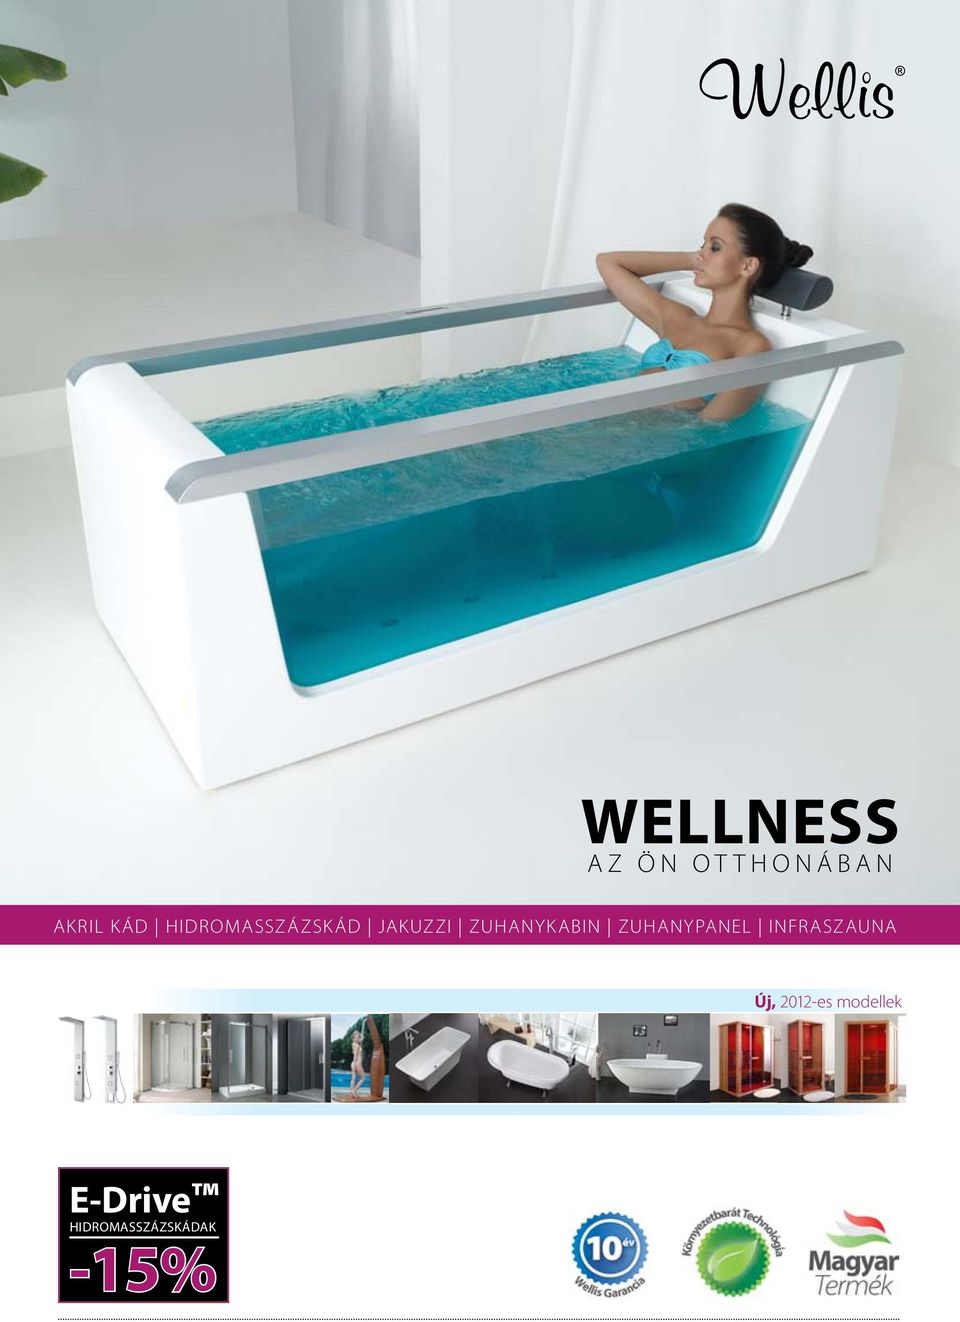 Wellness -15% az ön otthonában. Akril kád Hidromasszázskád jakuzzi  zuhanykabin zuhanypanel infraszauna. Új, 2012-es modellek.  Hidromasszázskádak - PDF Ingyenes letöltés